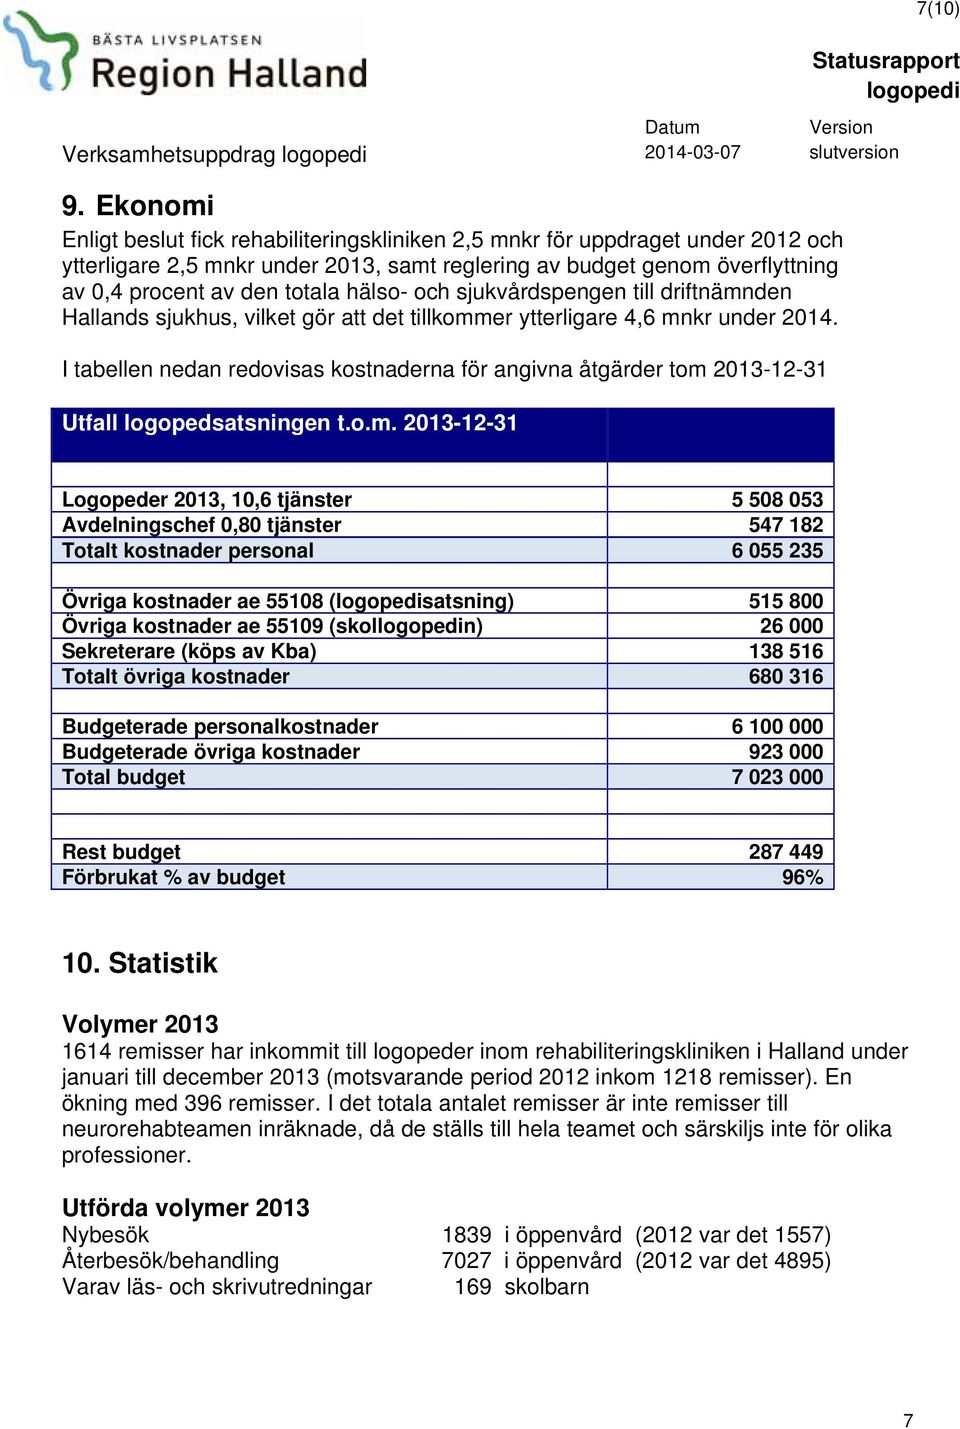 hälso- och sjukvårdspengen till driftnämnden Hallands sjukhus, vilket gör att det tillkommer ytterligare 4,6 mnkr under 2014.